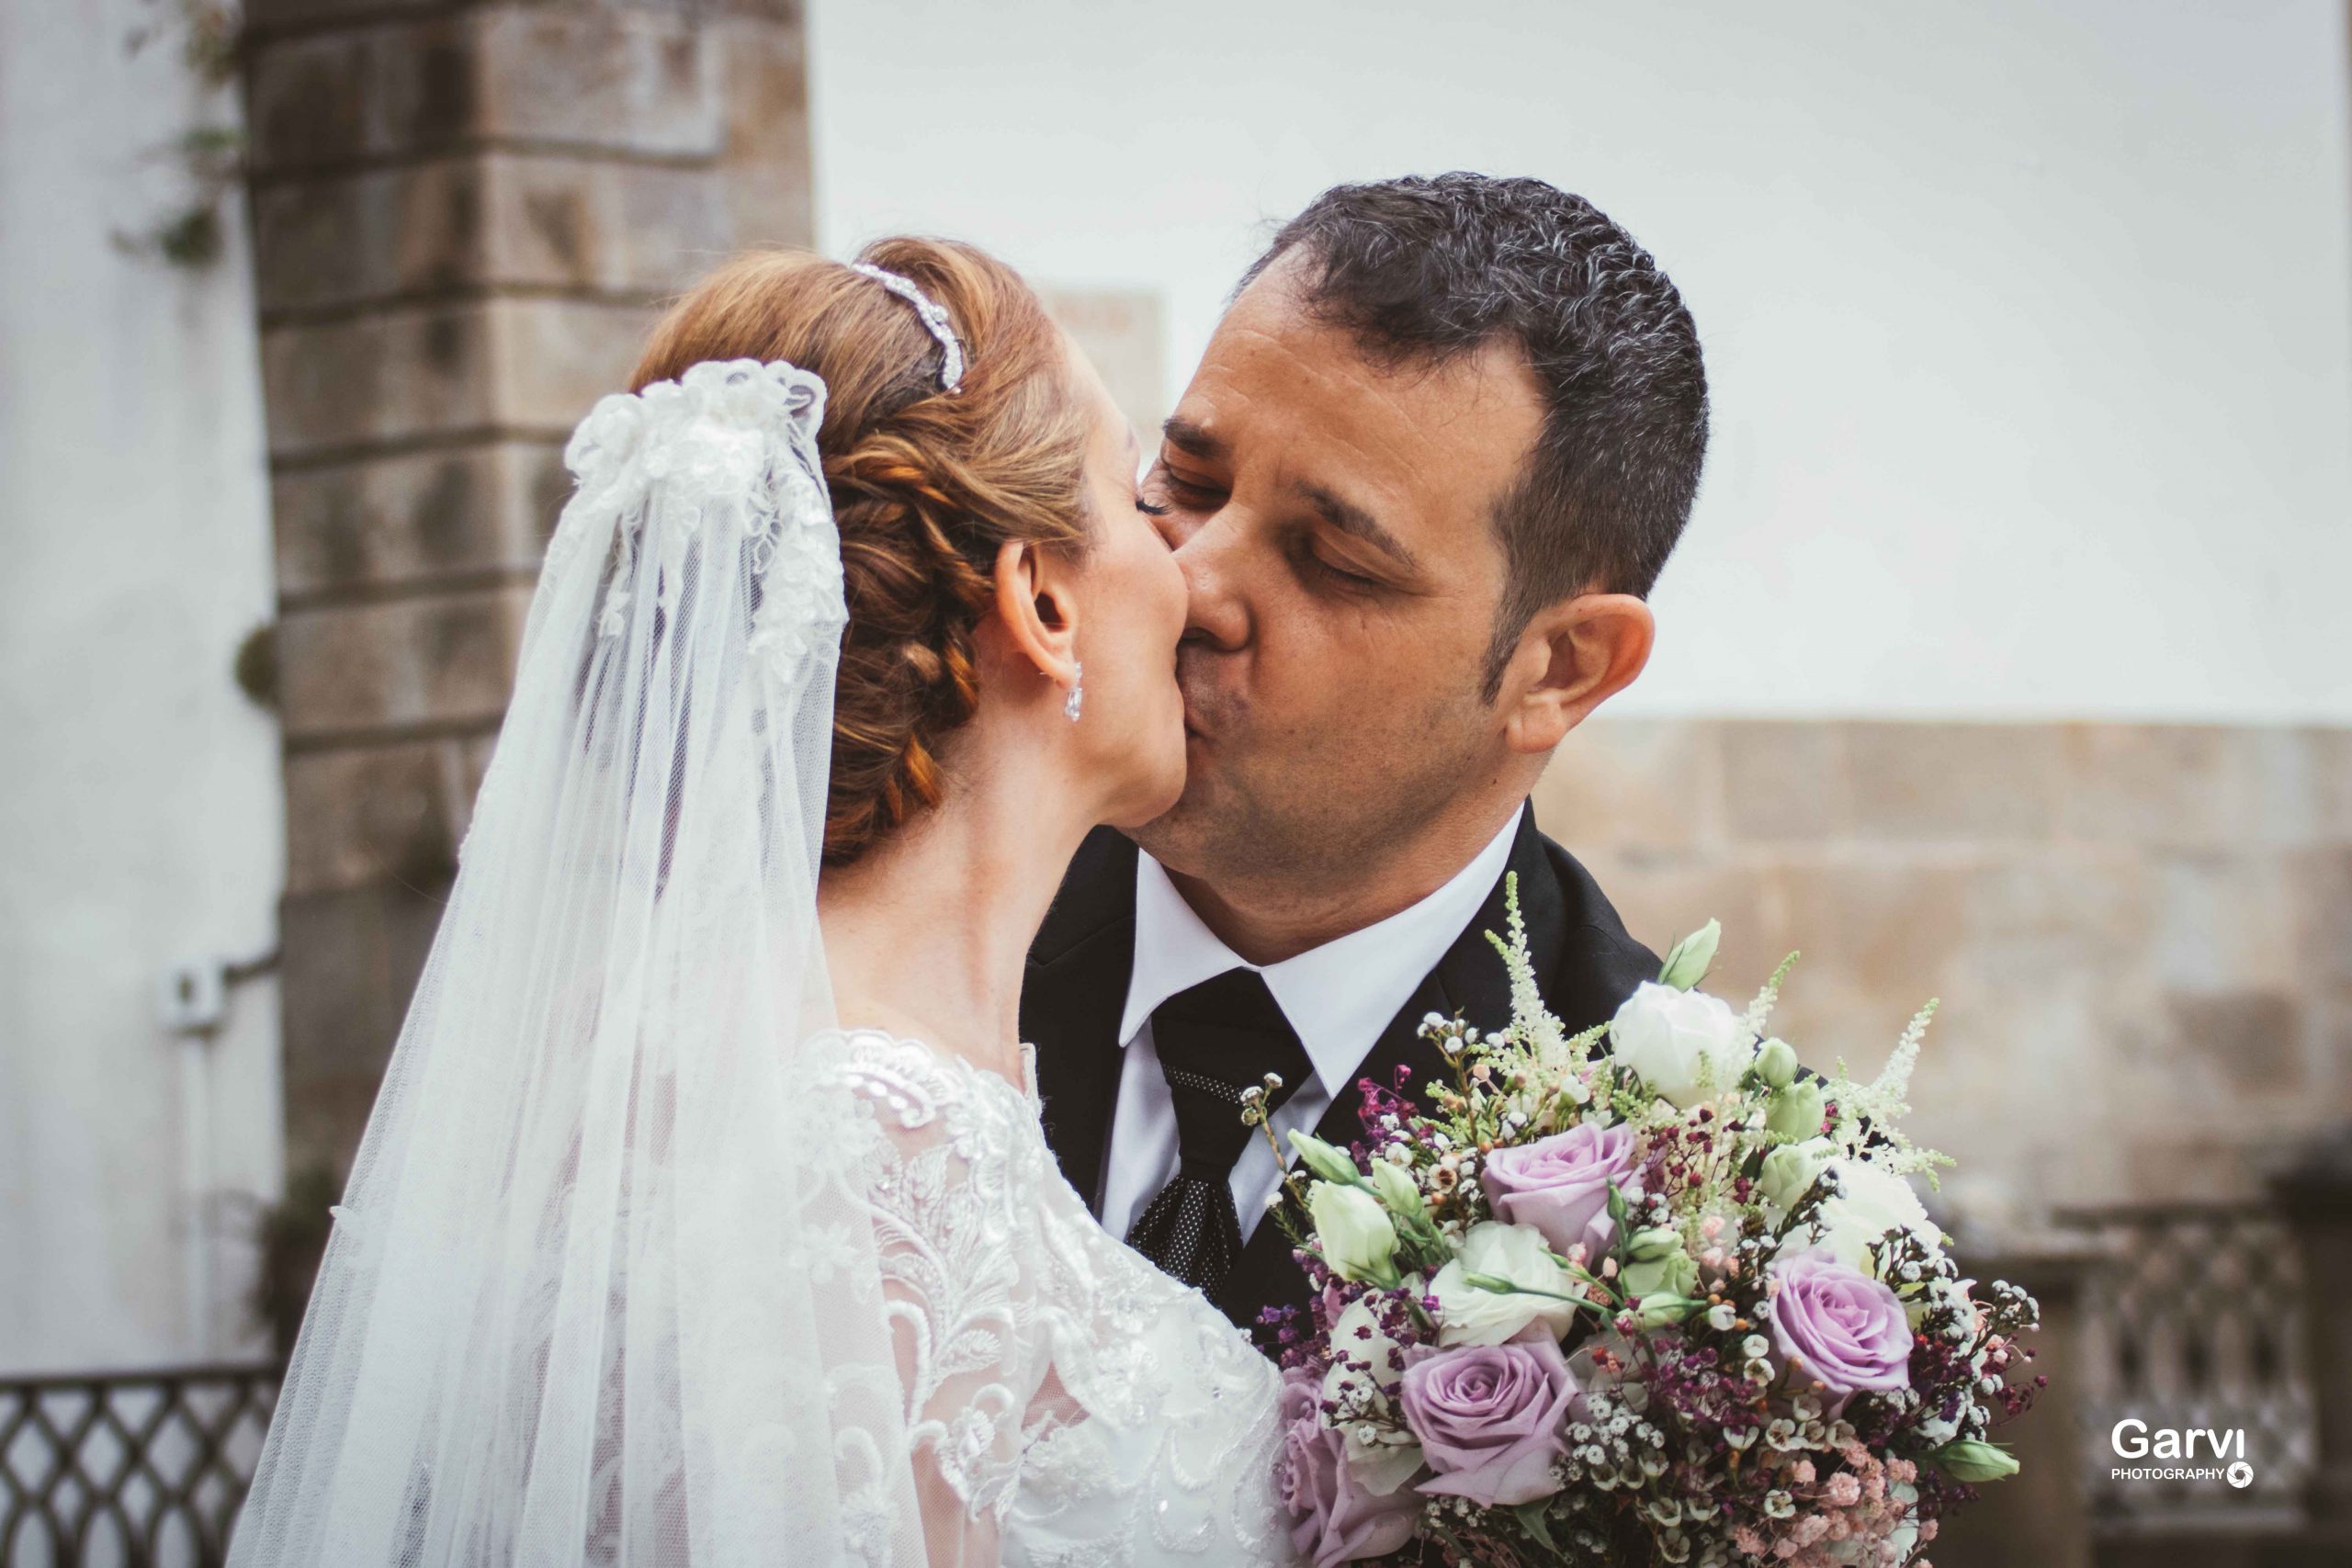 Novios besándose en una boda en Madrid Fotografía por Garvi Photography